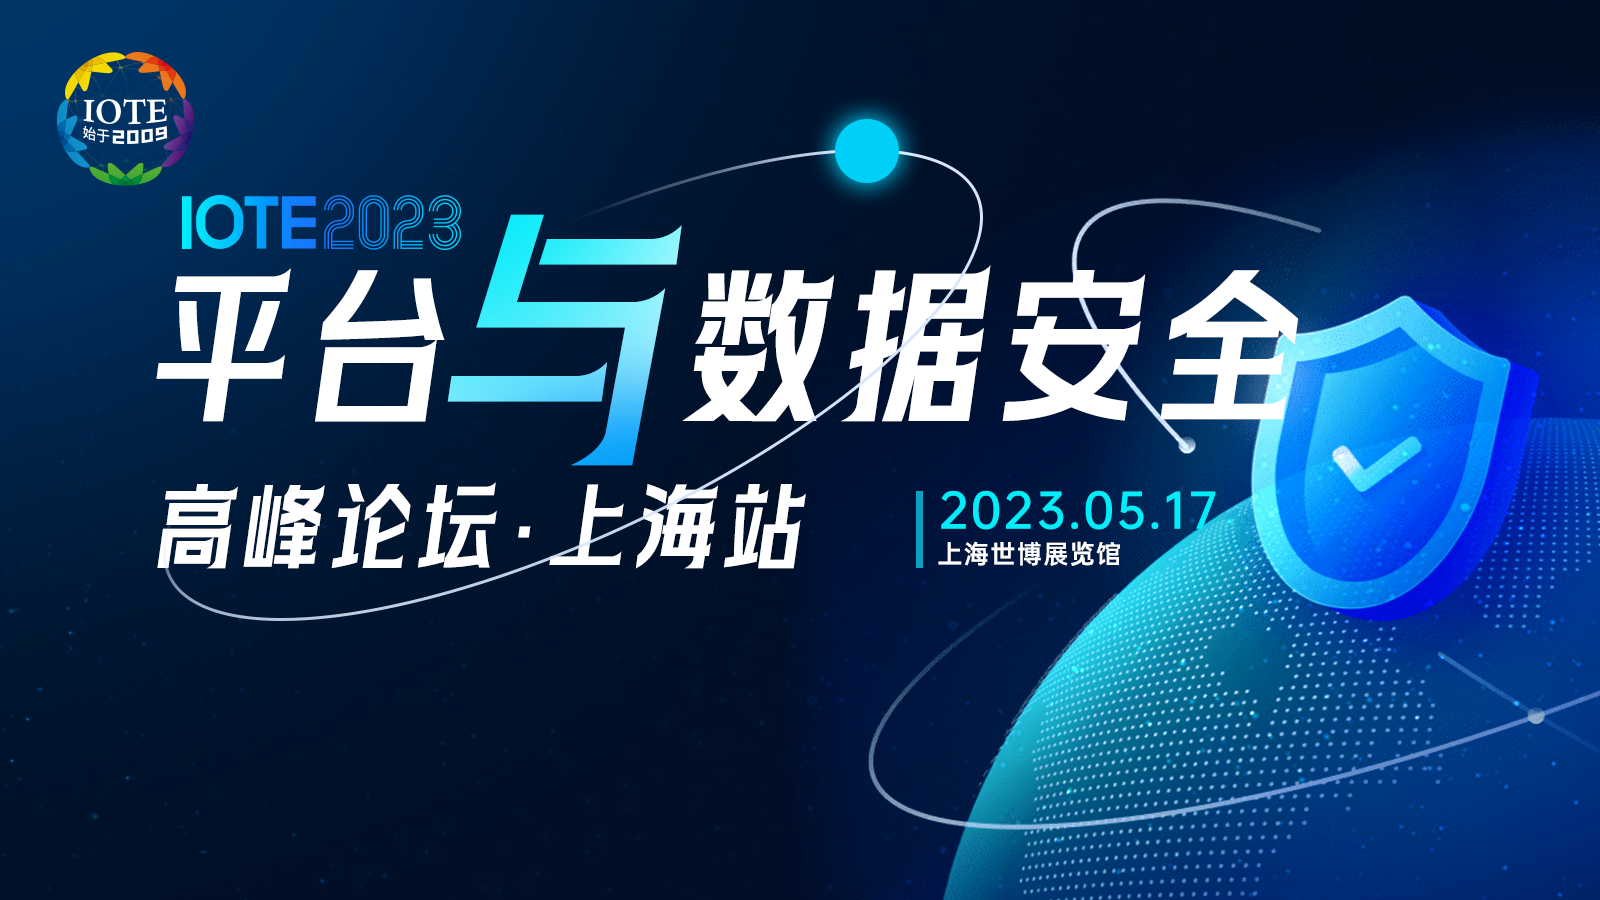 IOTE 2023上海•平台与数据安全高峰论坛--IOTE 物联网展